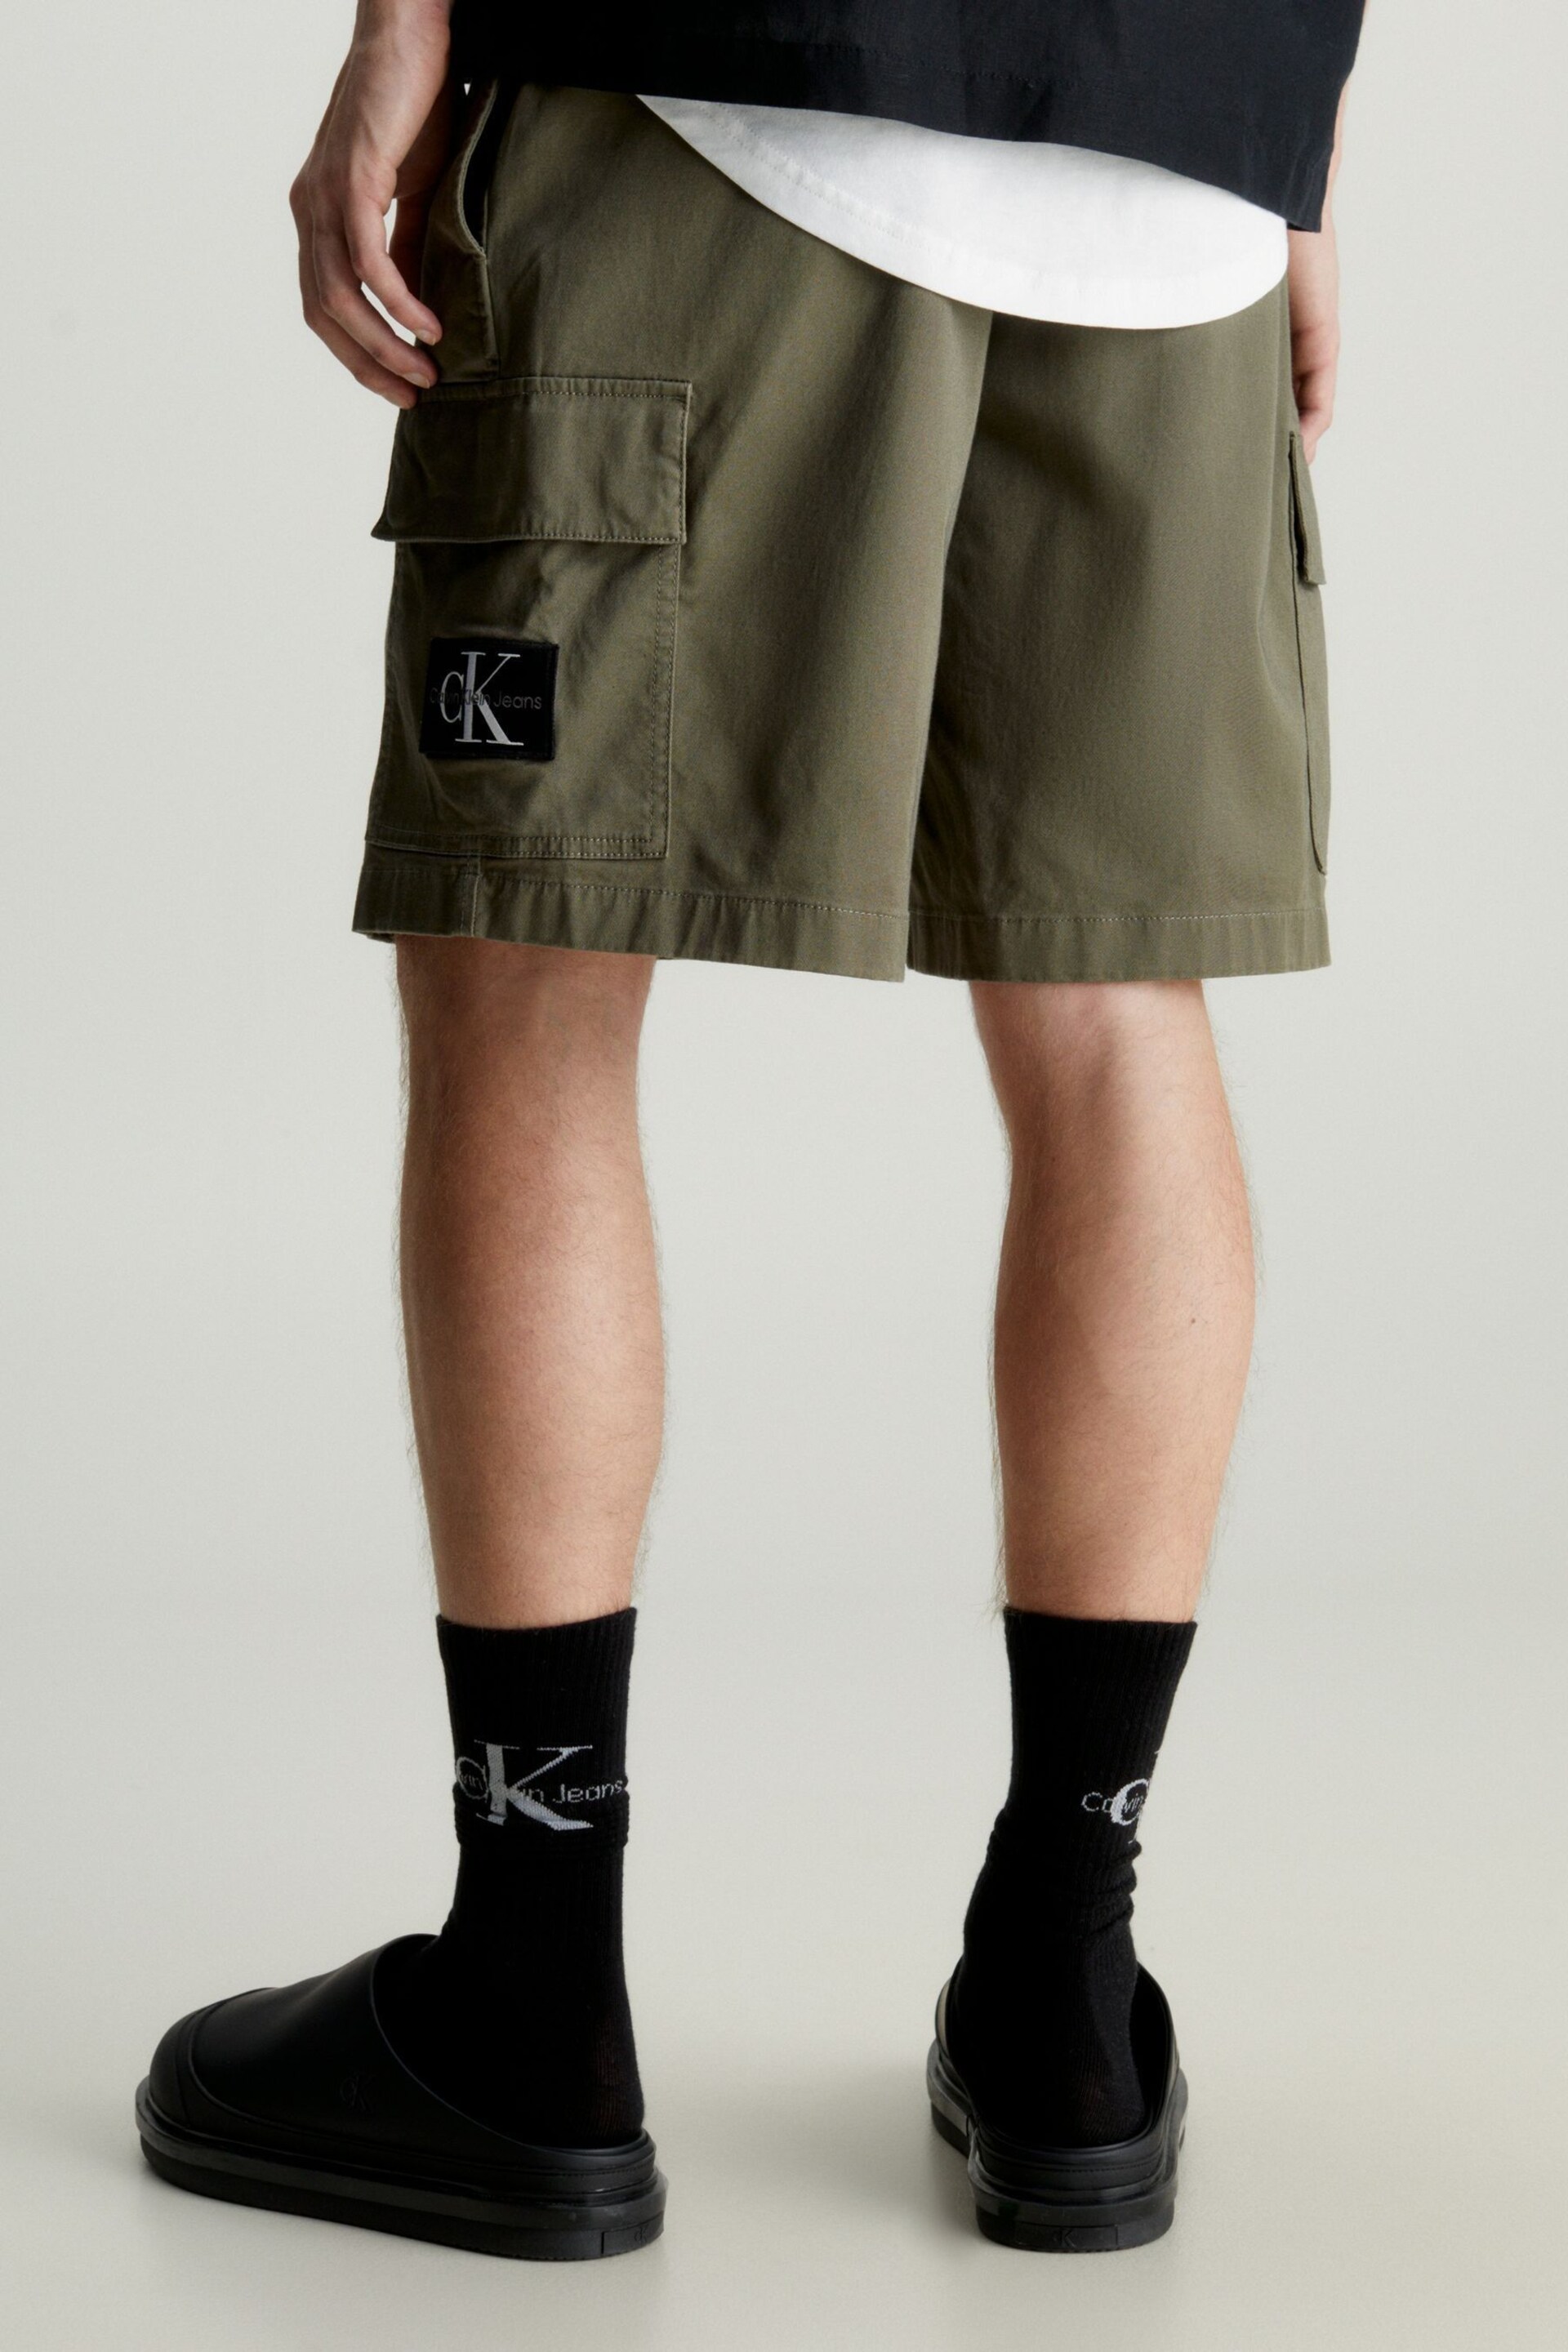 Calvin Klein Green Cargo Woven Shorts - Image 2 of 6